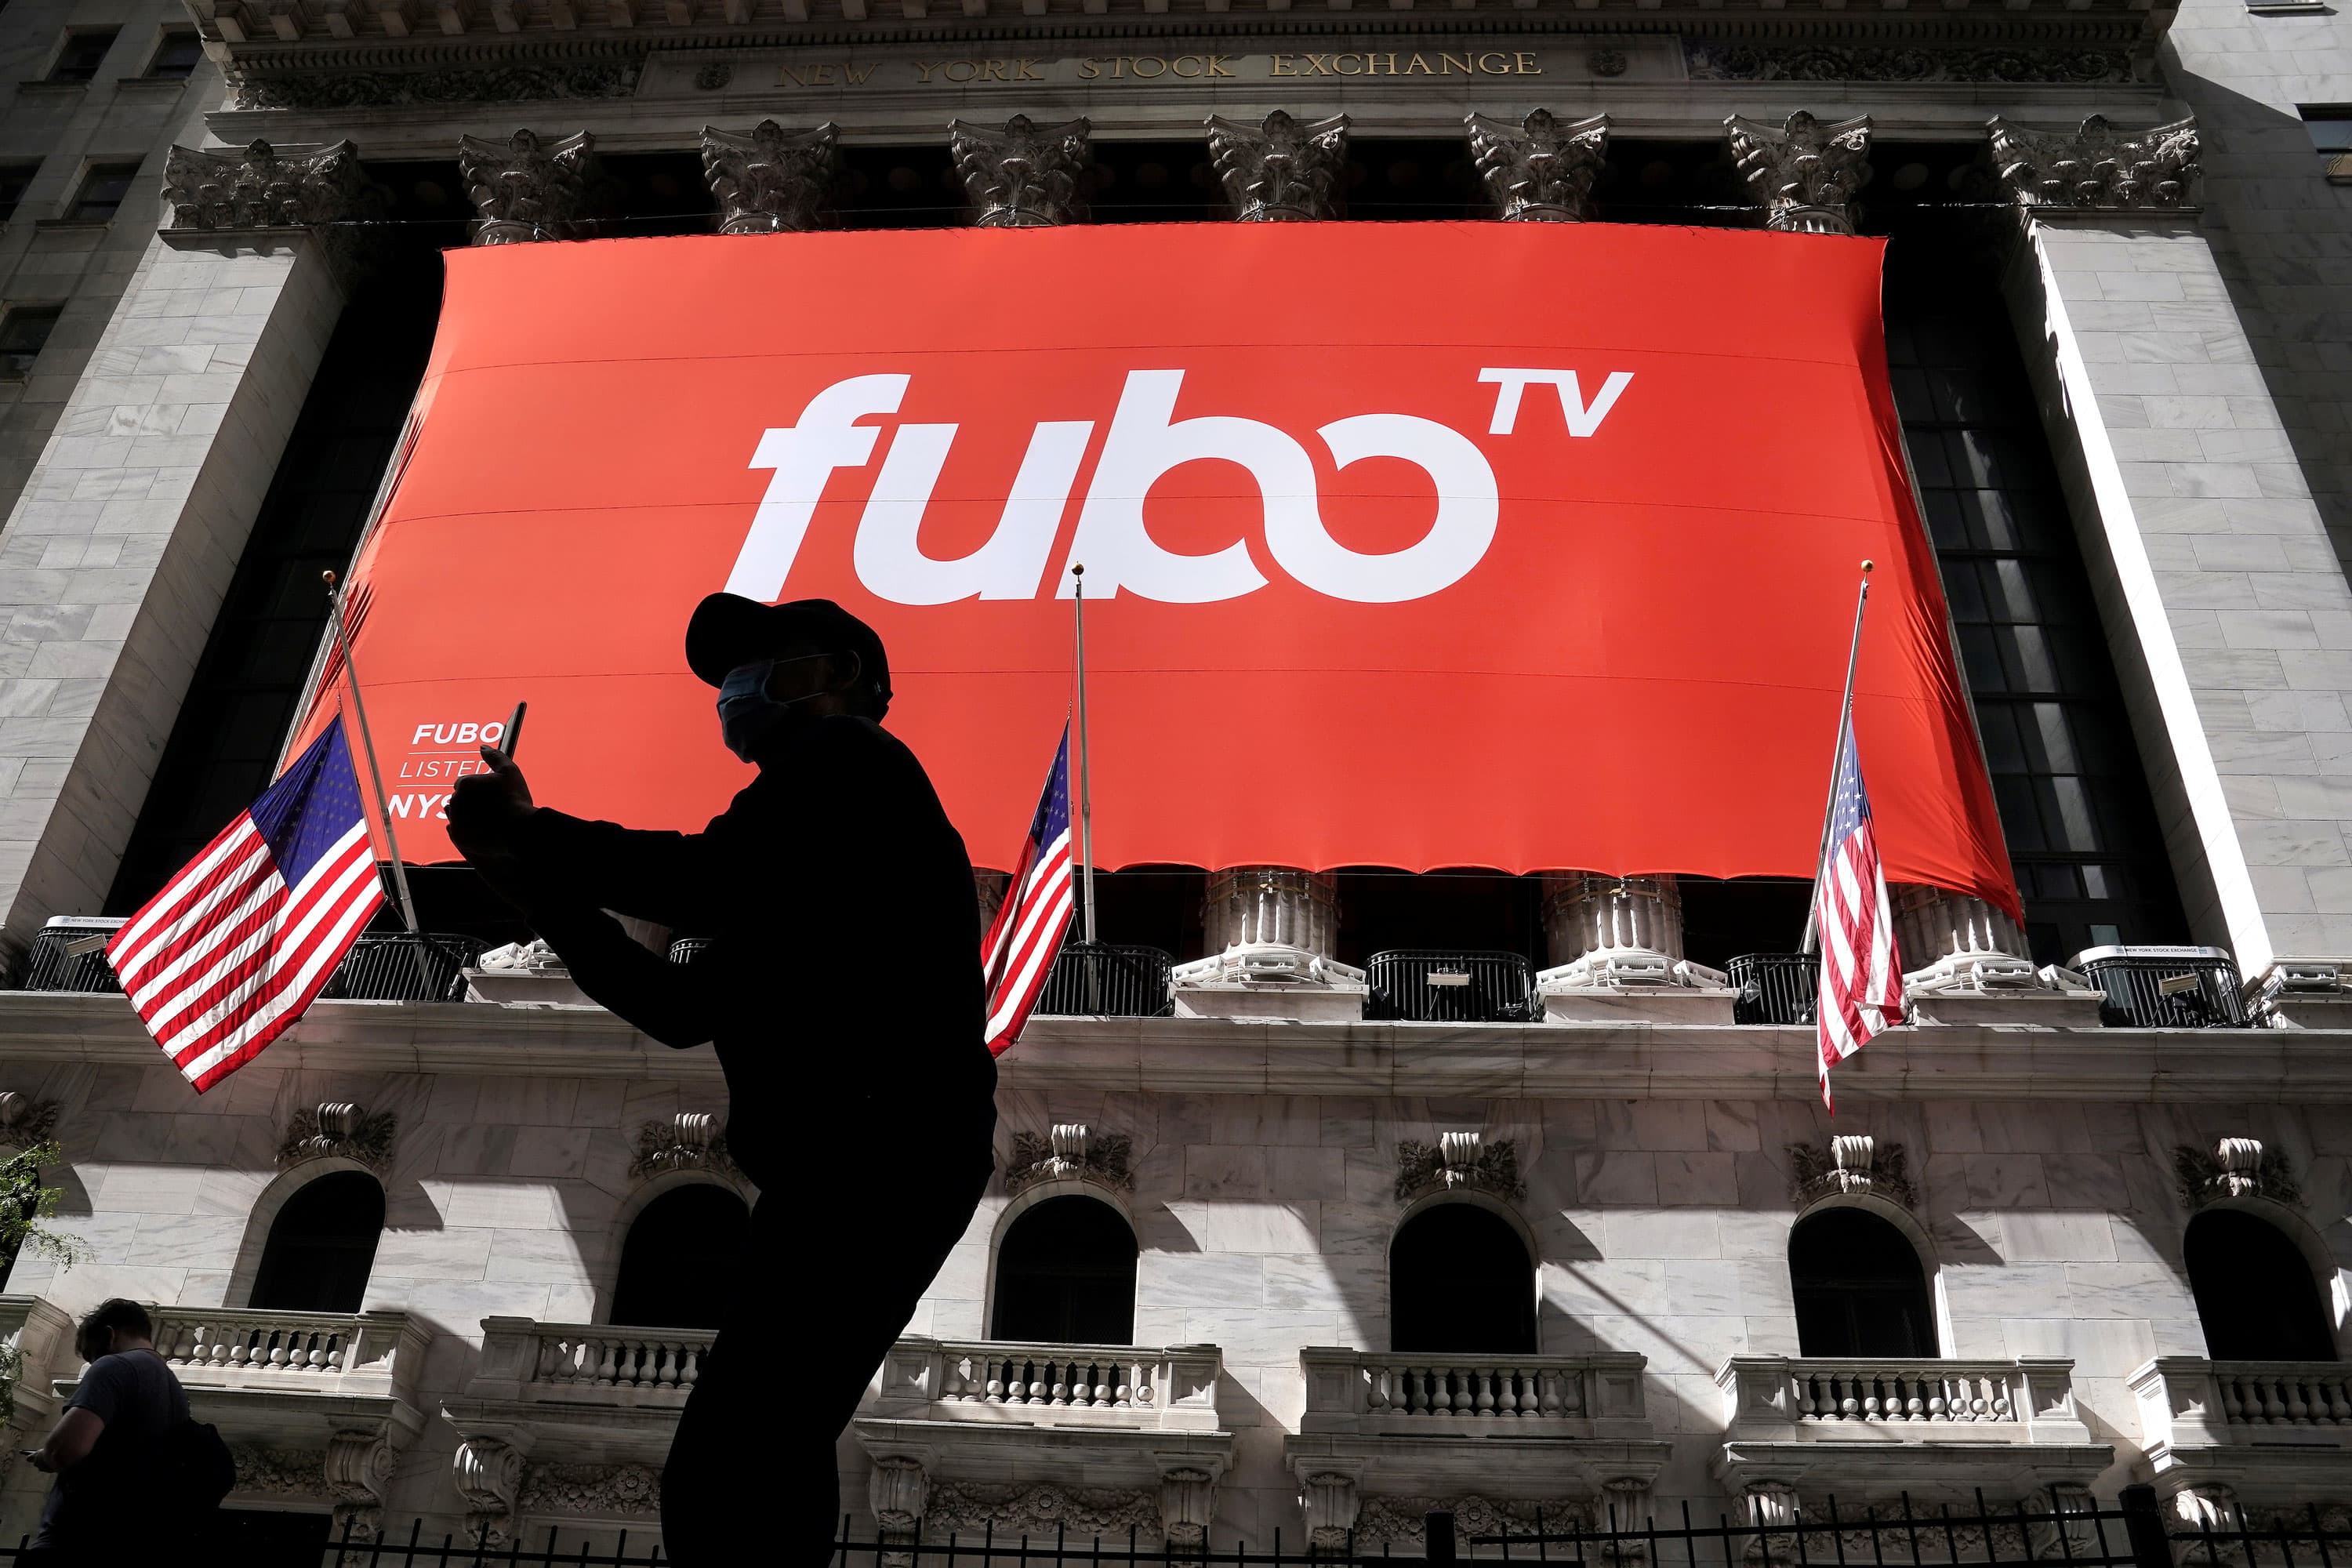 Wedbush actualiza fuboTV para obtener un rendimiento superior, citando un 